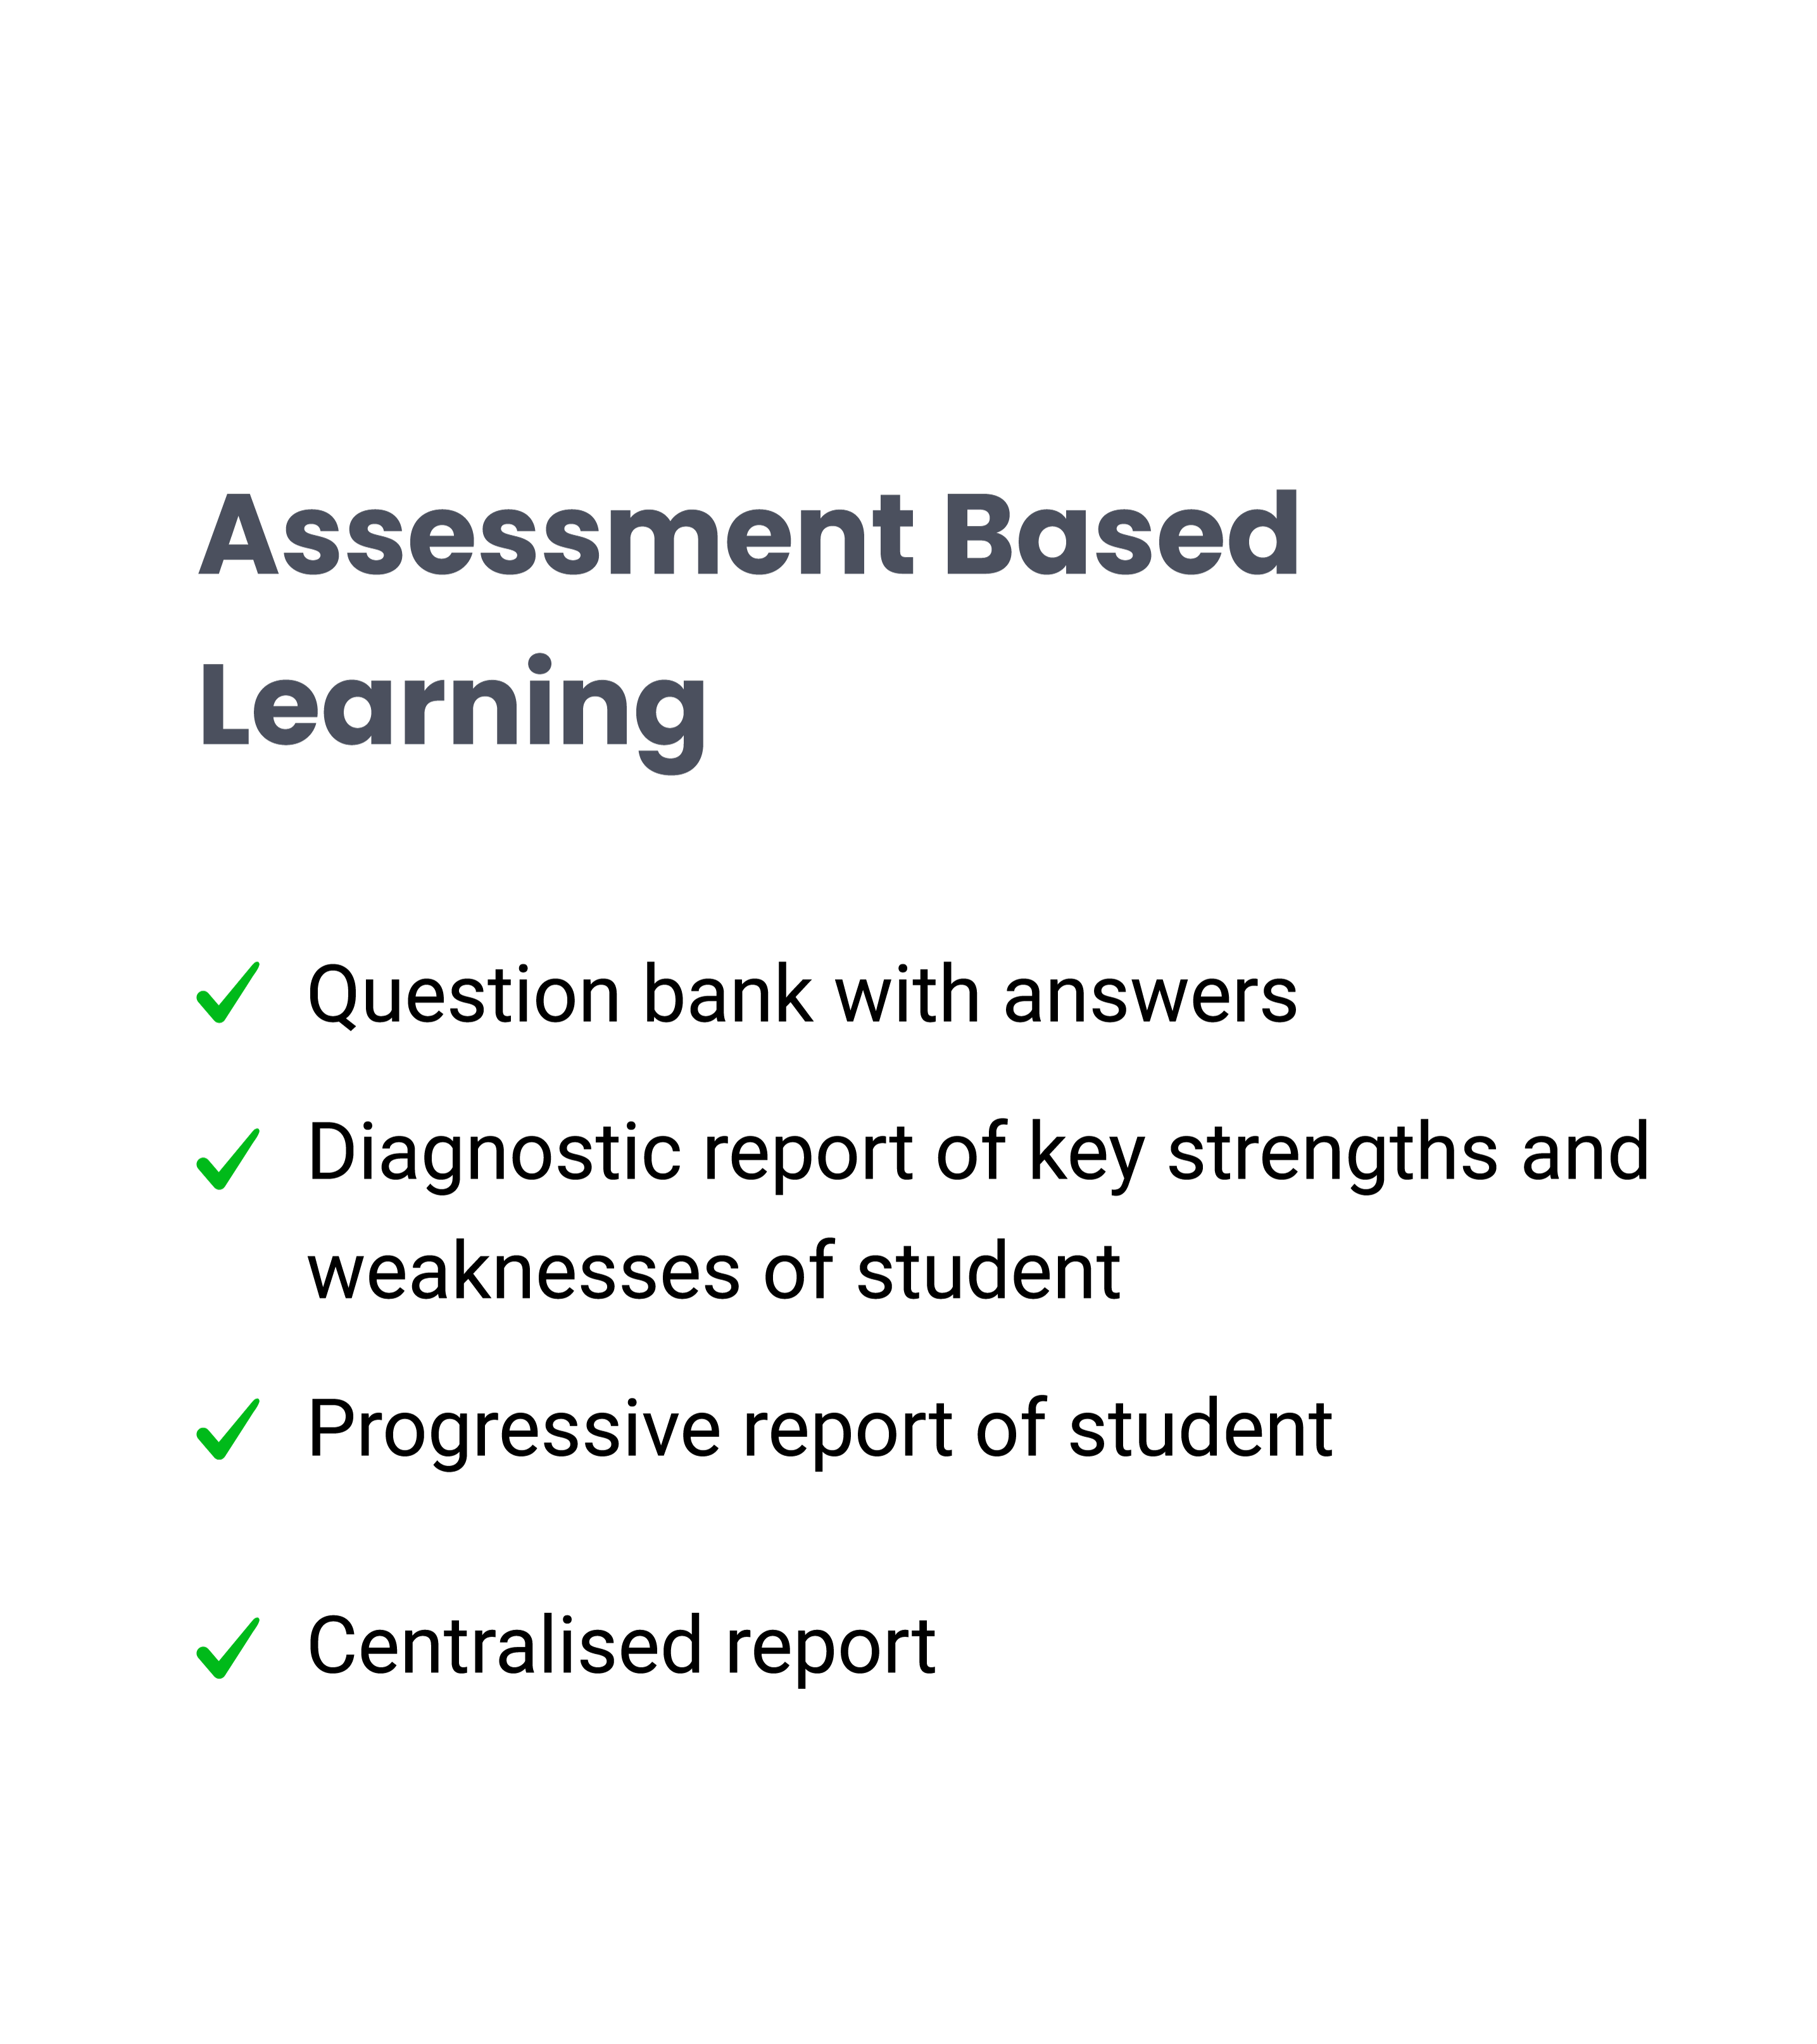 Assessment based learning